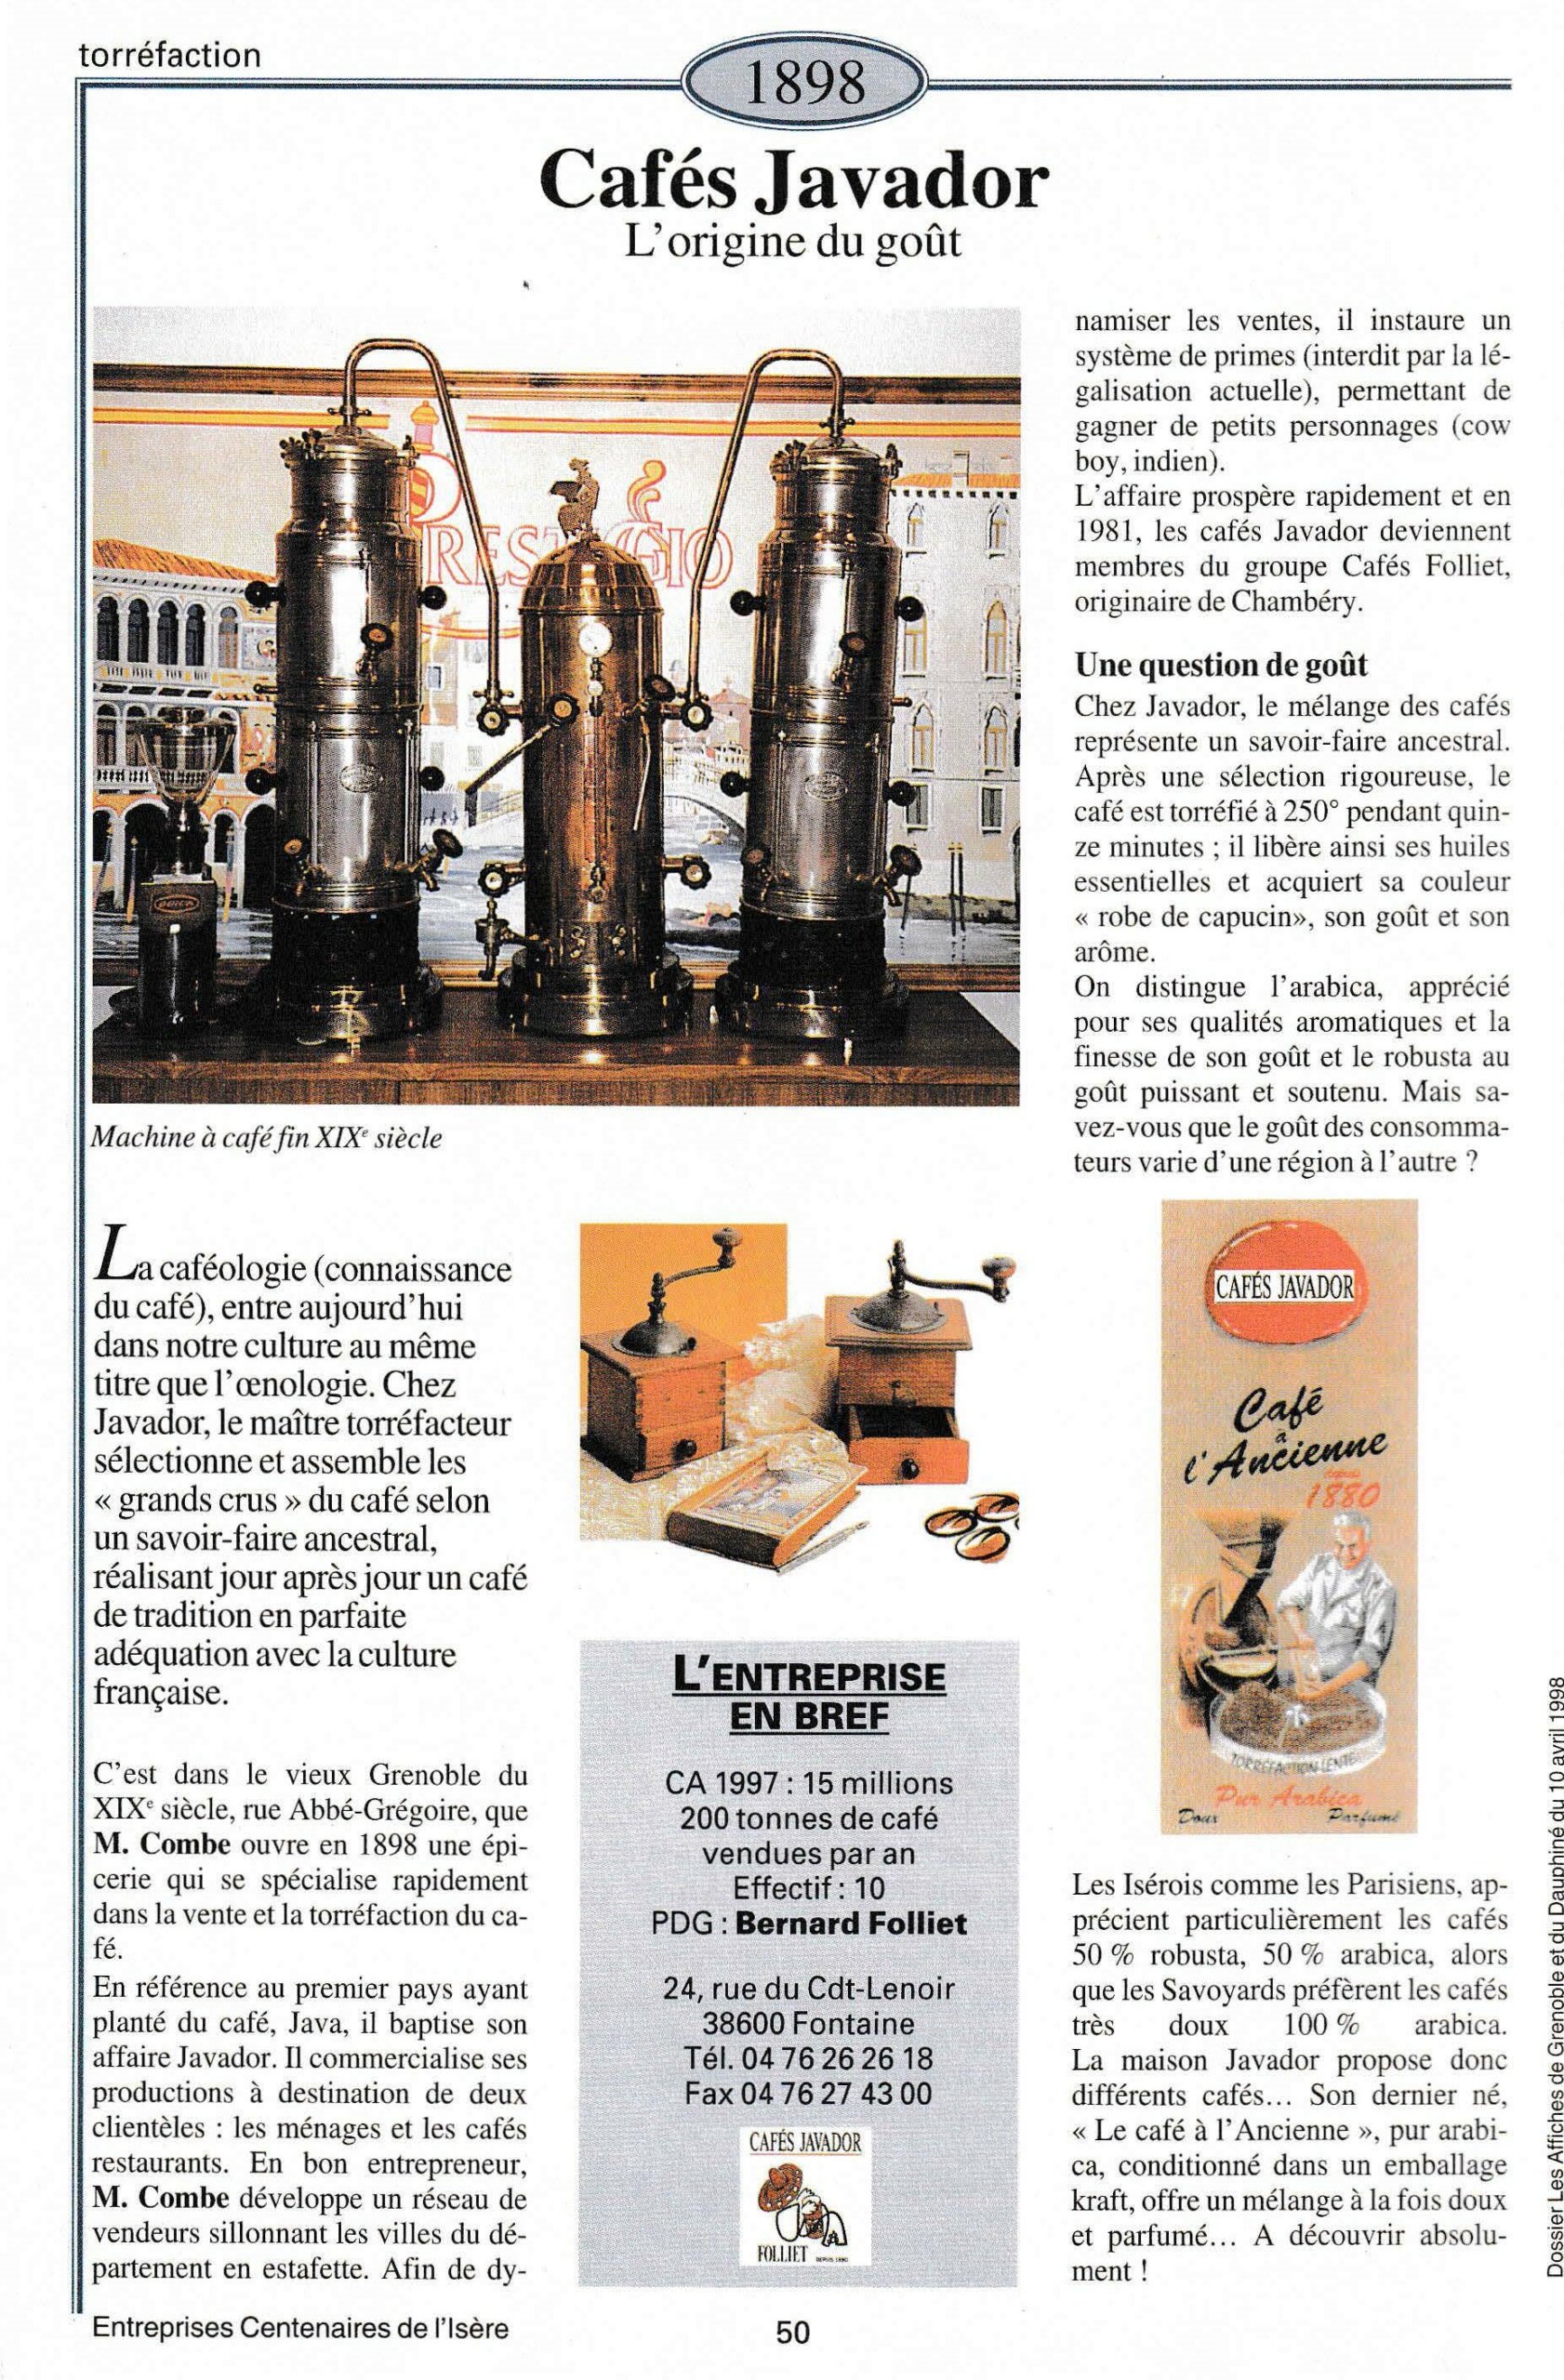 Cafés Javador - fiche du supplément "Entreprises centenaires en Isère", publié par Les affiches de Grenoble et du Dauphiné, juin 1998.